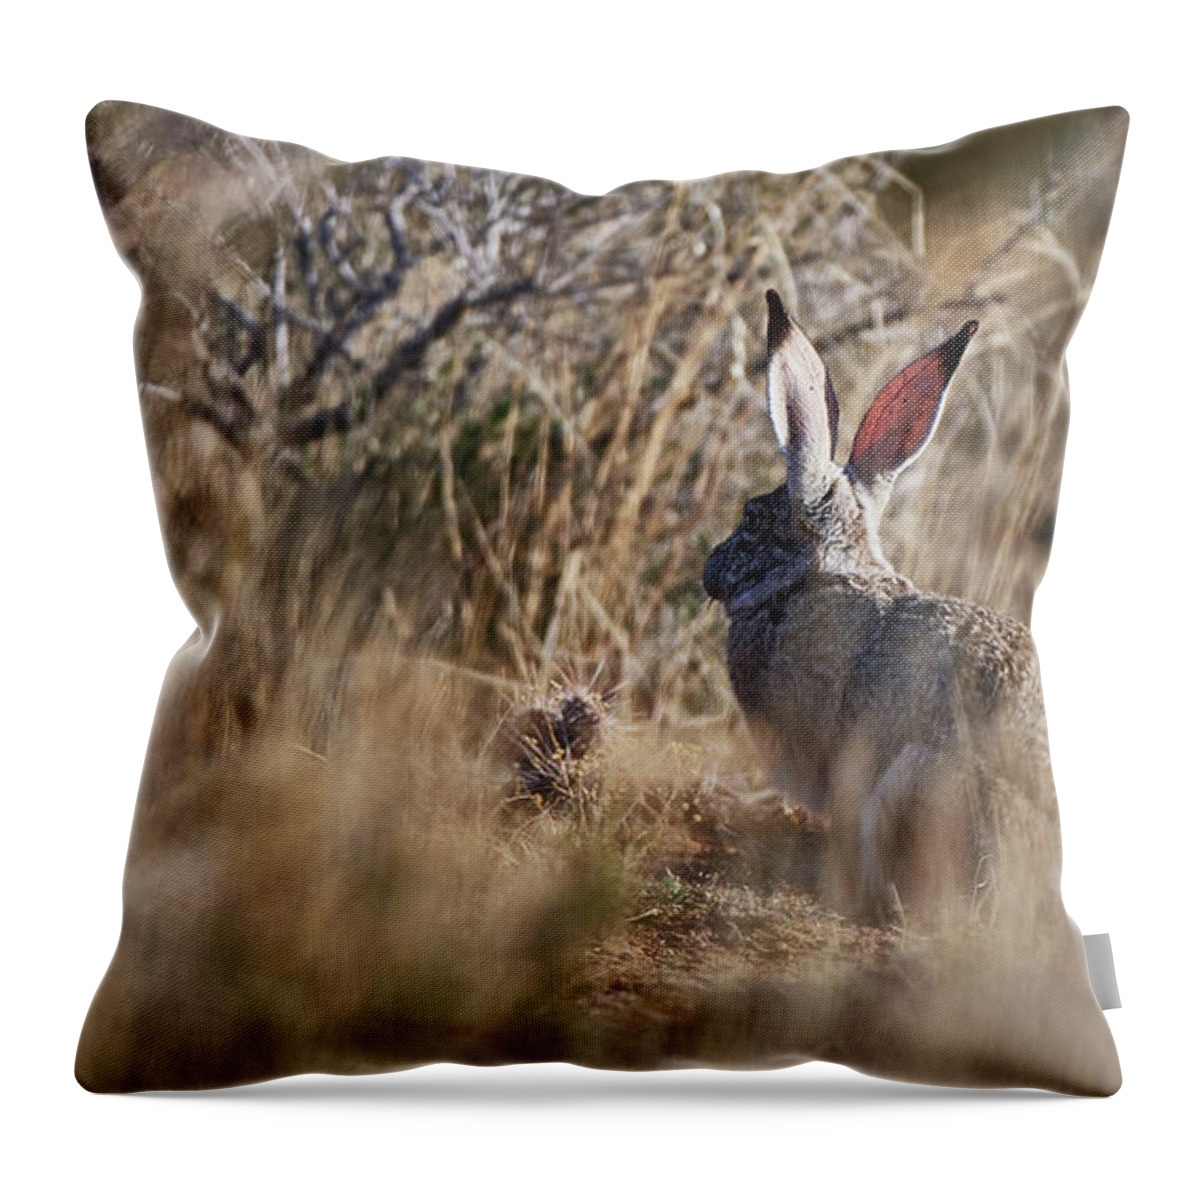 Desert Rabbit Throw Pillow featuring the photograph Desert Hare by Robert WK Clark